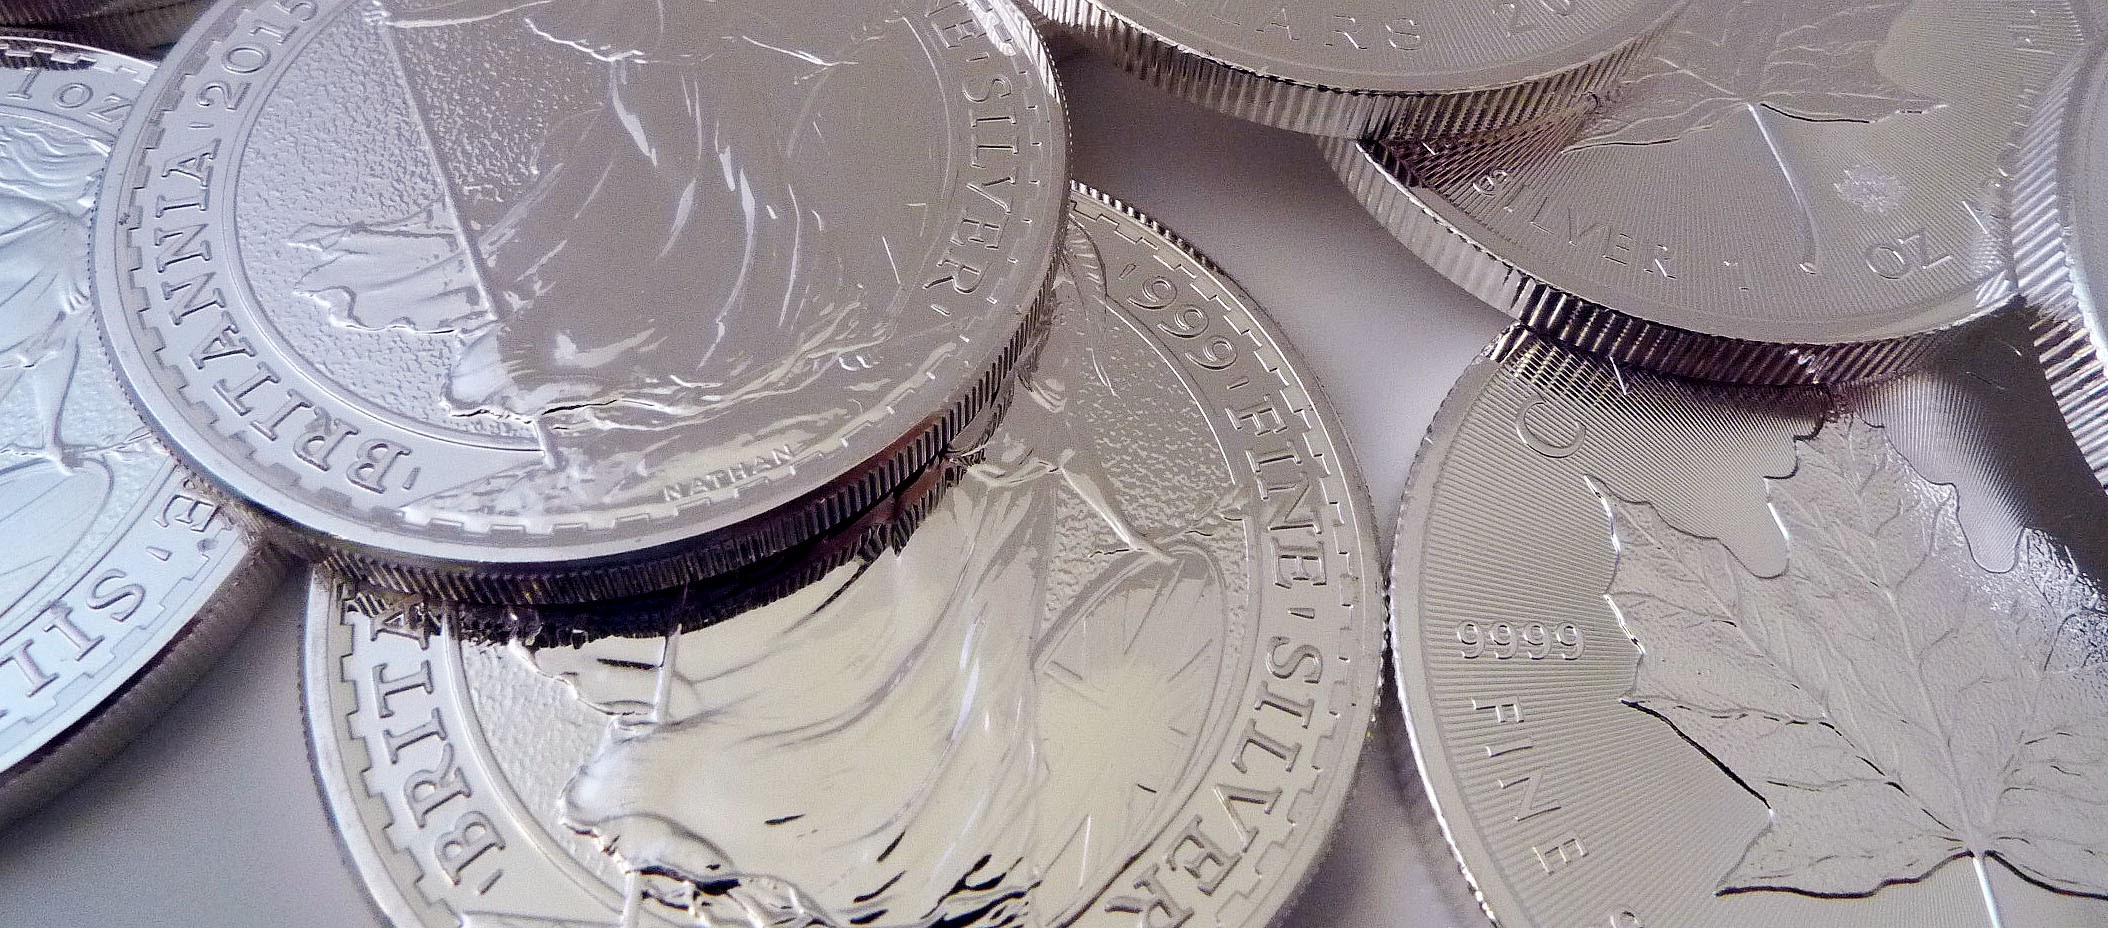 Invesco Physical Silver ETC (SSLV ETC) med ISIN nummer IE00B43VDT70 erbjuder exponering mot silverpriset genom att investera i fysiskt silver som förvaras hos i J.P.Morgan Chase Banks Londonsvalv.